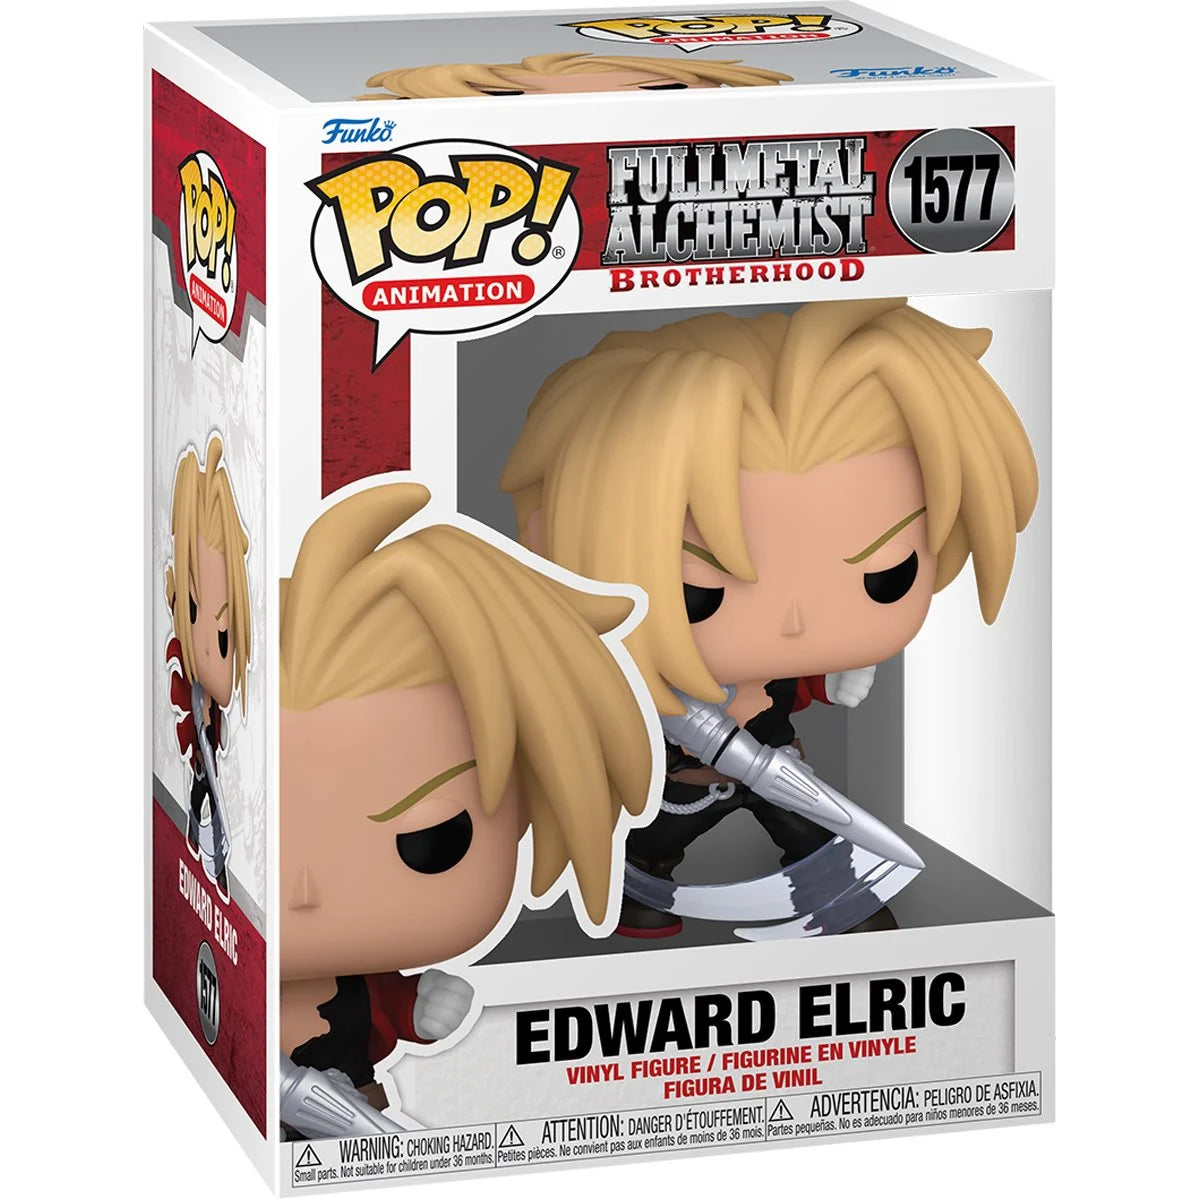 Fullmetal Alchemist Edward Elric